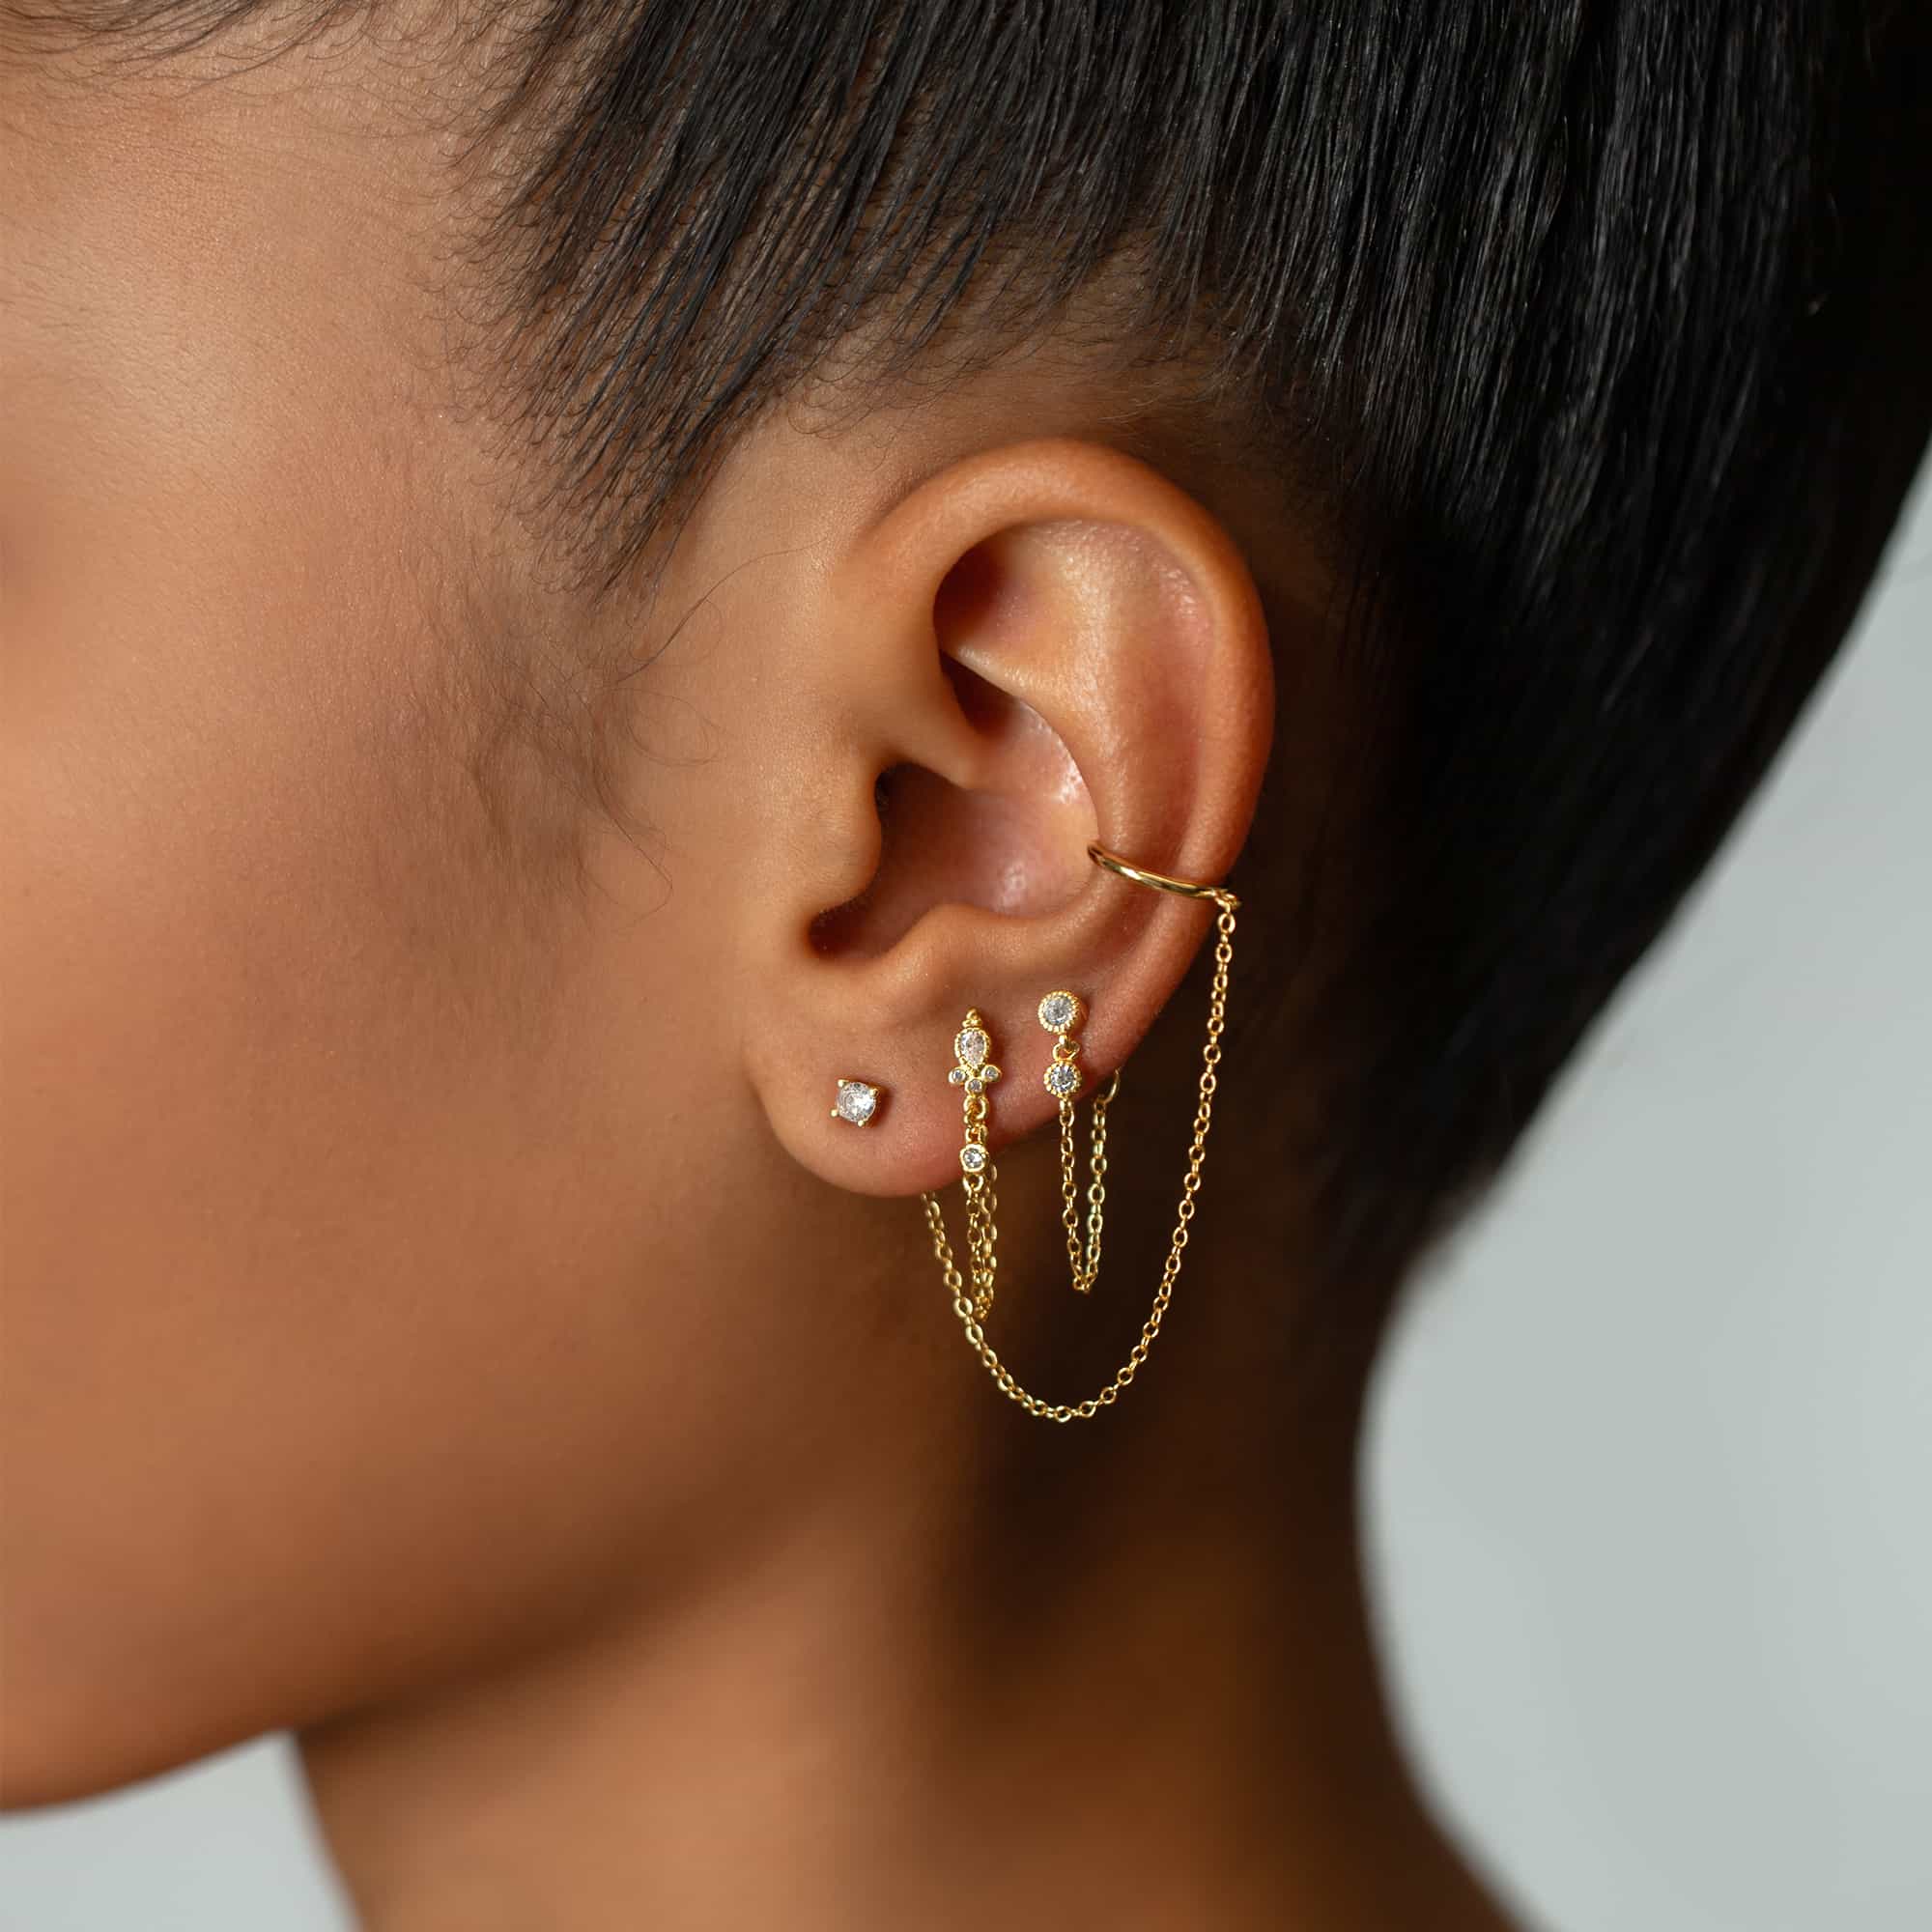 Amazon.com: Ear Cuff Chain Earrings Sparkling Rhinestone Long Tassel Ear  Wrap Crawler Earrings Non Piercing Ear Climbers Earrings Rhinestone Chain  Dangle Earrings for Women Girls (golden): Clothing, Shoes & Jewelry